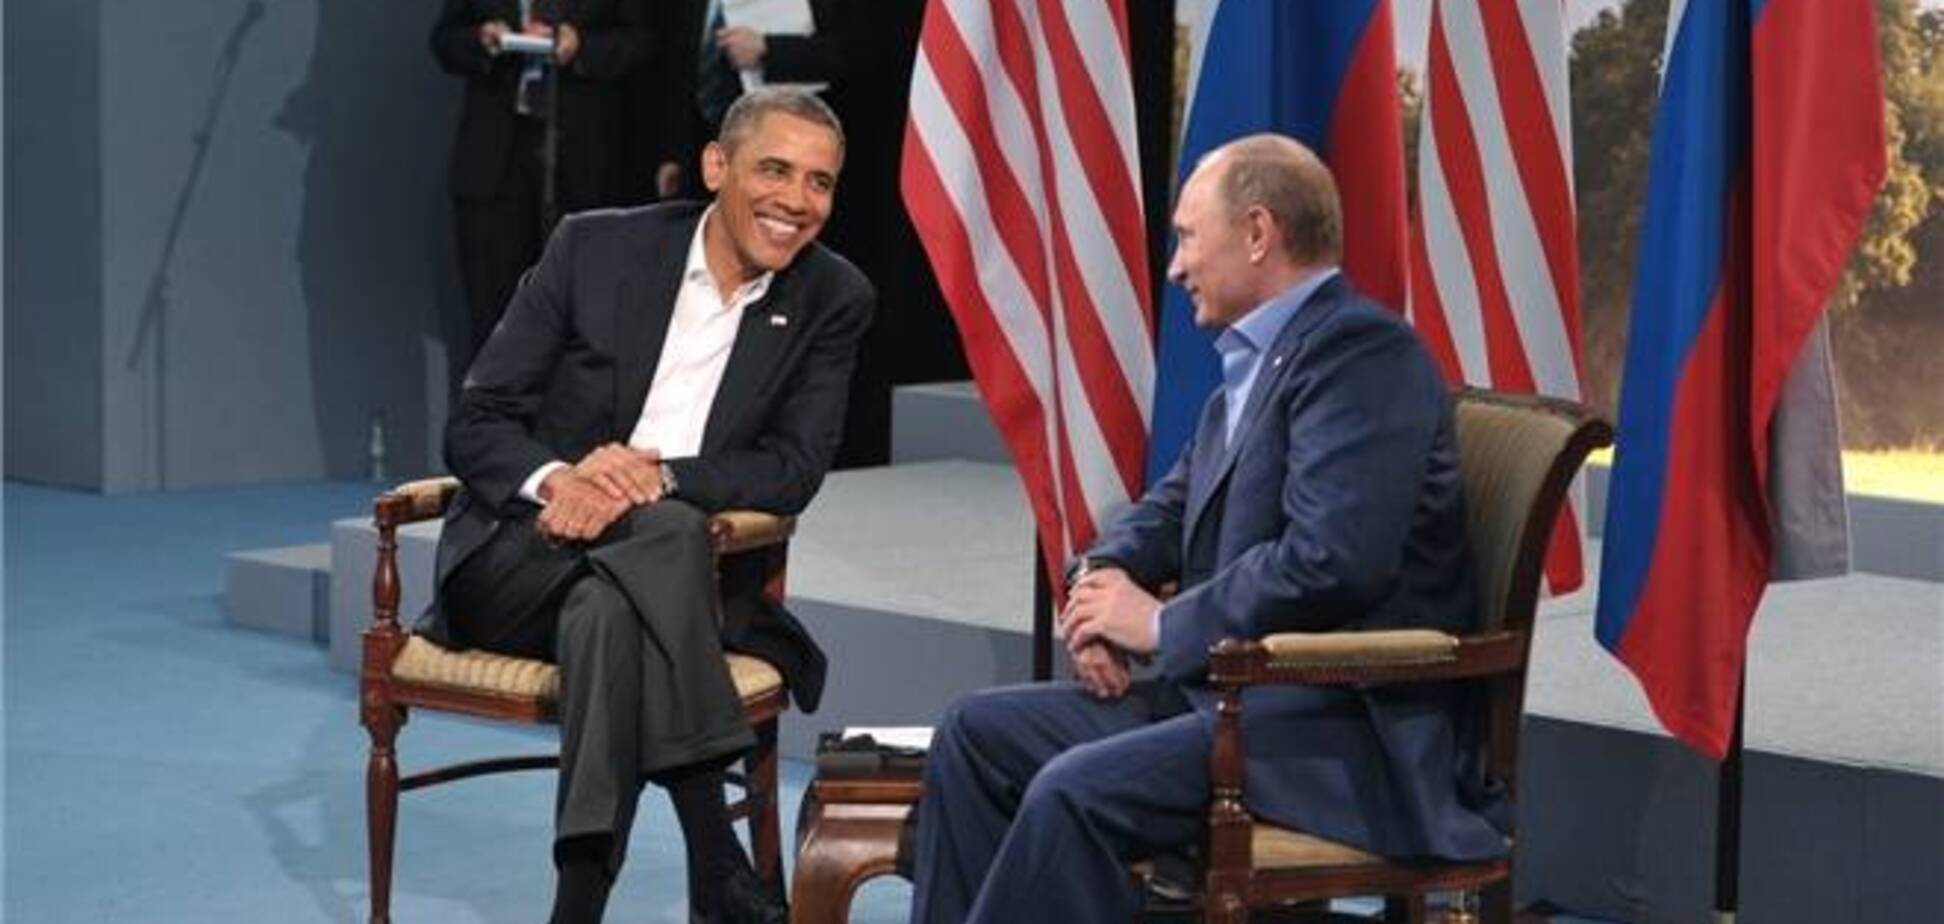 Обама остановил отношения с РФ на негативной ноте - депутат Госдумы